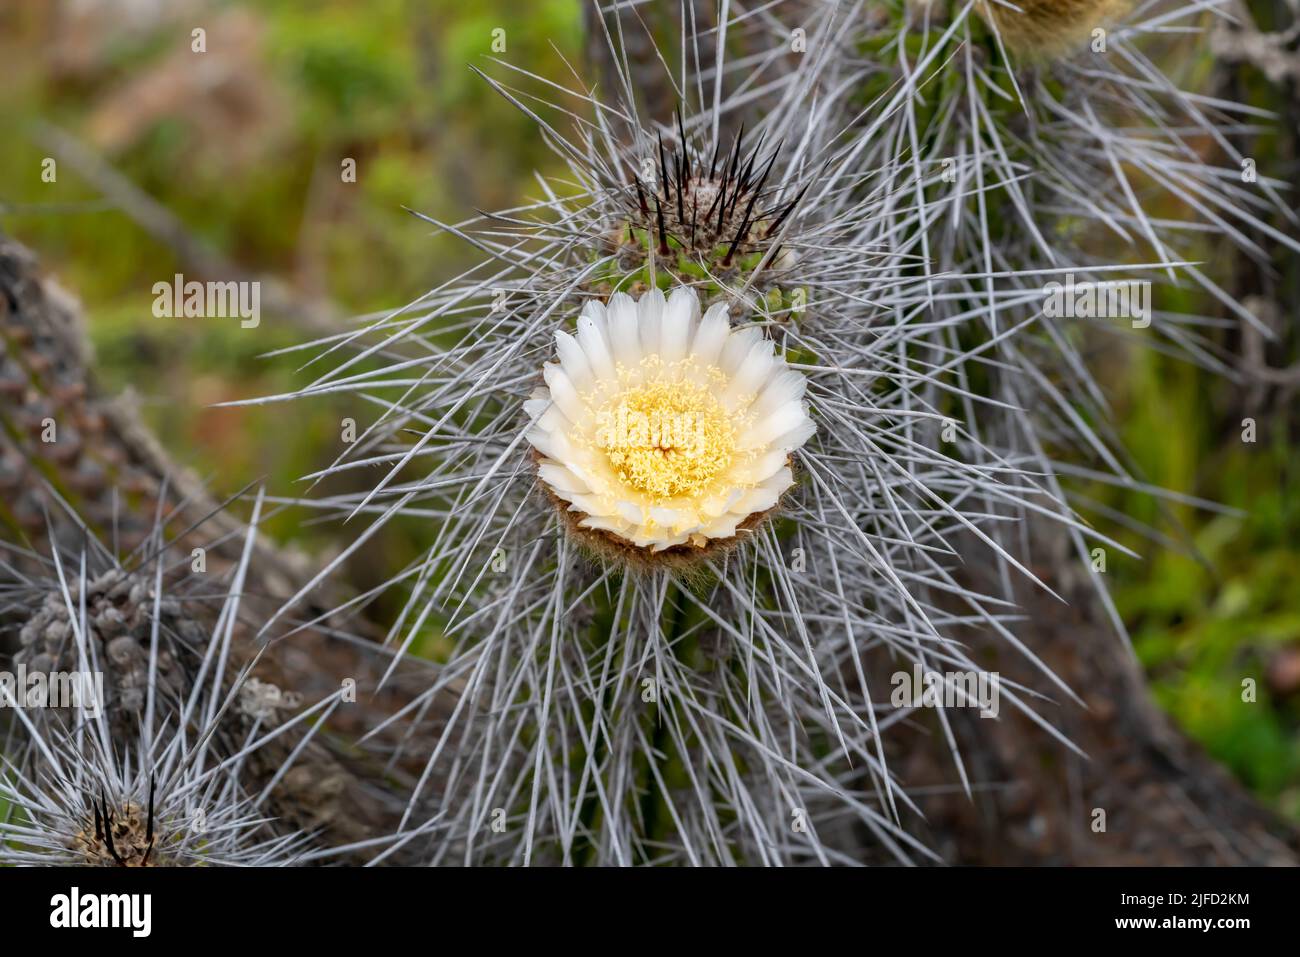 Bel fiore bianco di cactus sulla costa del deserto di atacama in cile. Luce del giorno Foto Stock